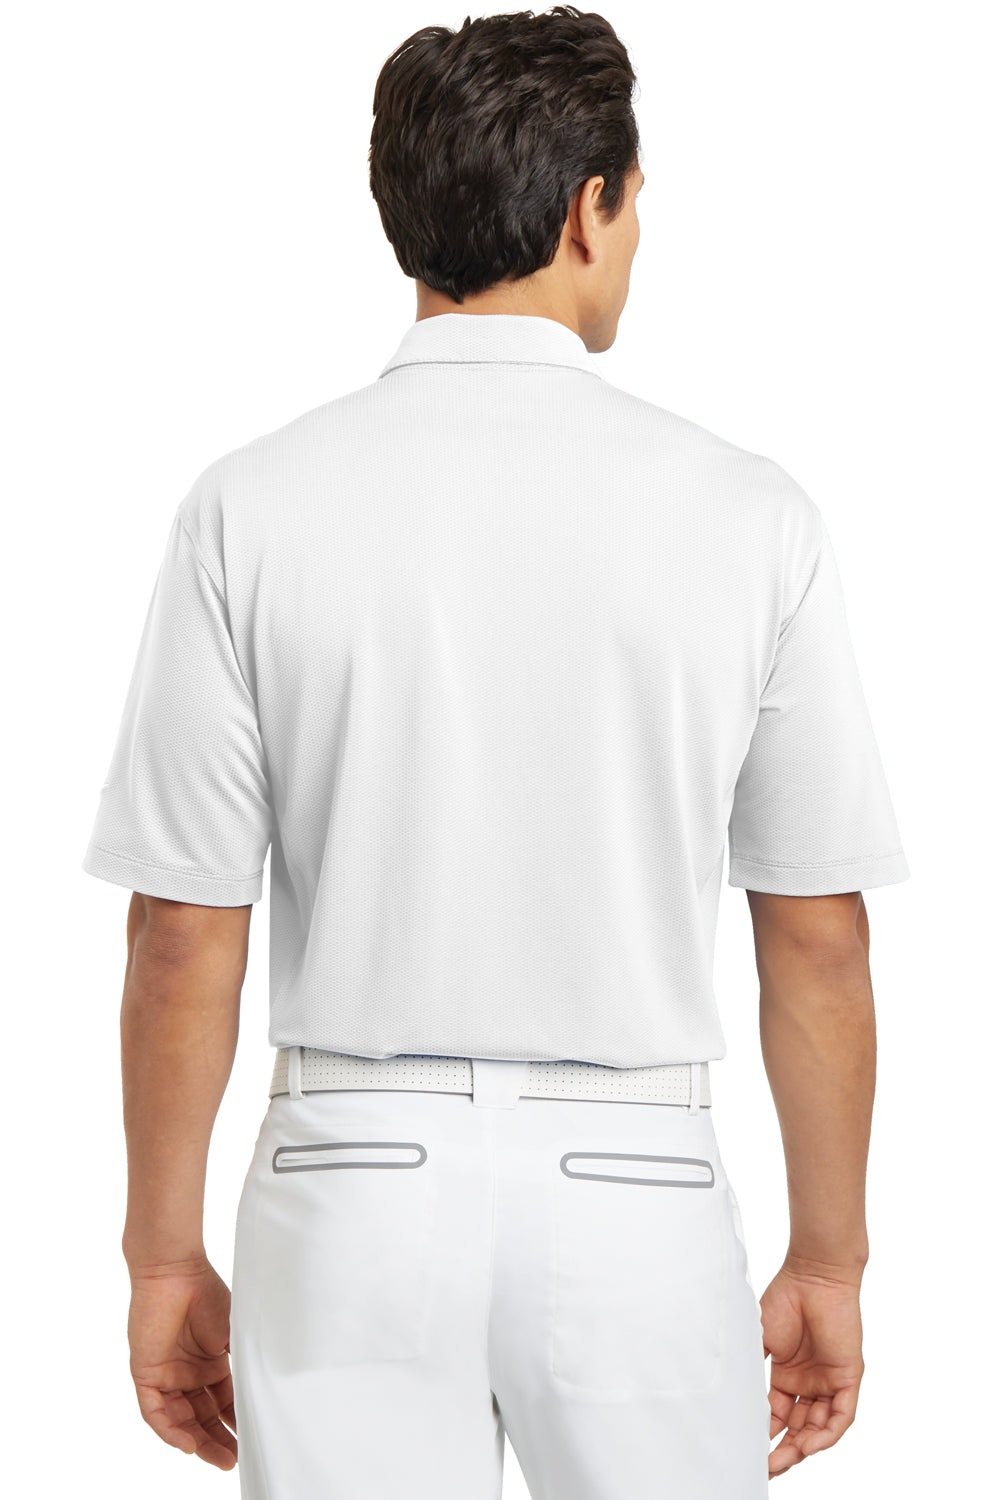 Nike 354055 Mens Sphere Dry Moisture Wicking Short Sleeve Polo Shirt White Back